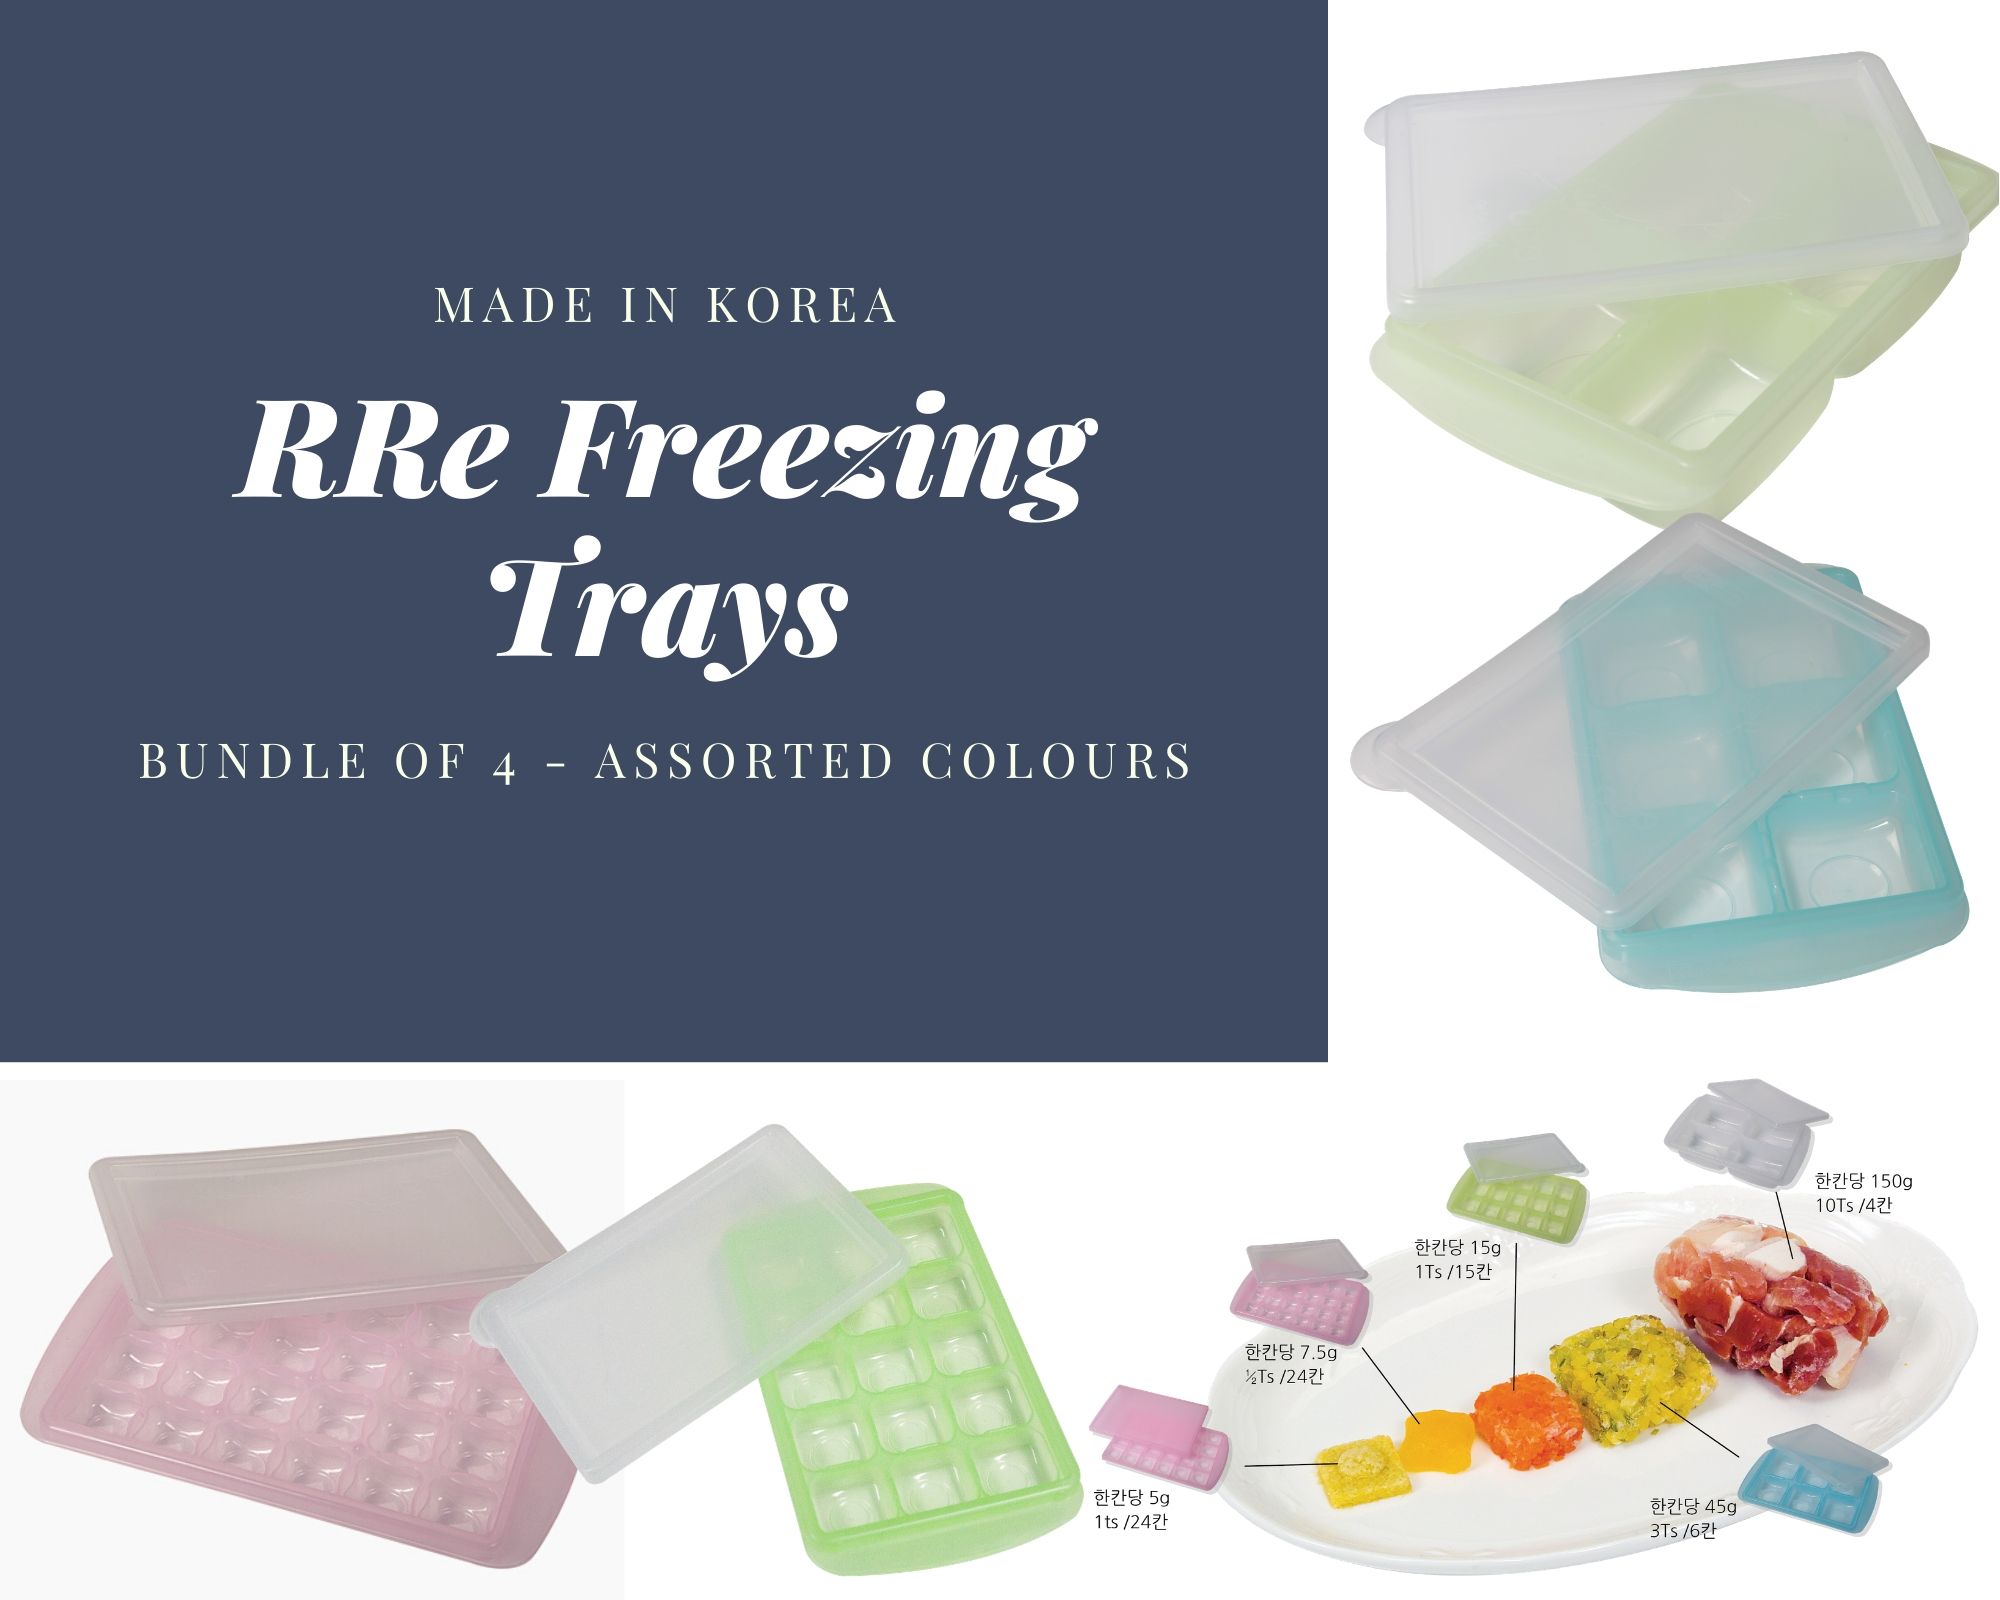 RRE Freezing Tray 4 Sizes (7.5g + 15g + 45g + 150g)